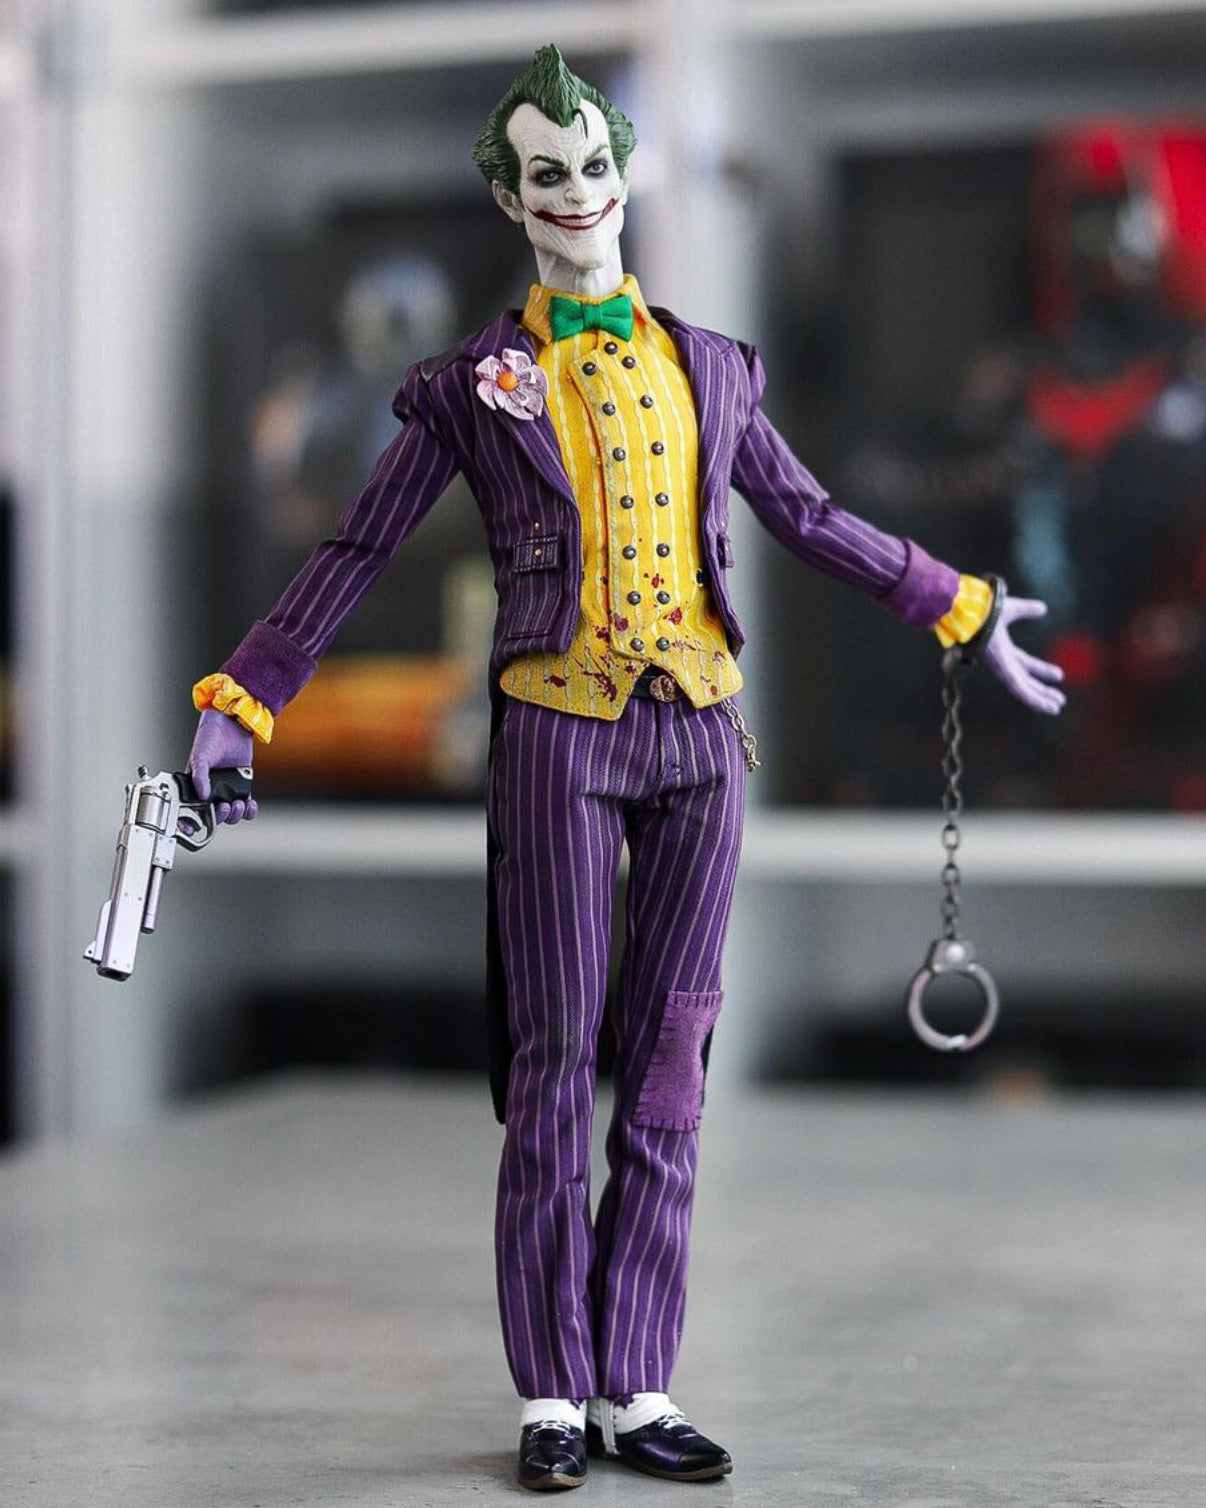 Hot toys VGM27 DC Arkham Asylum The Joker – Pop Collectibles